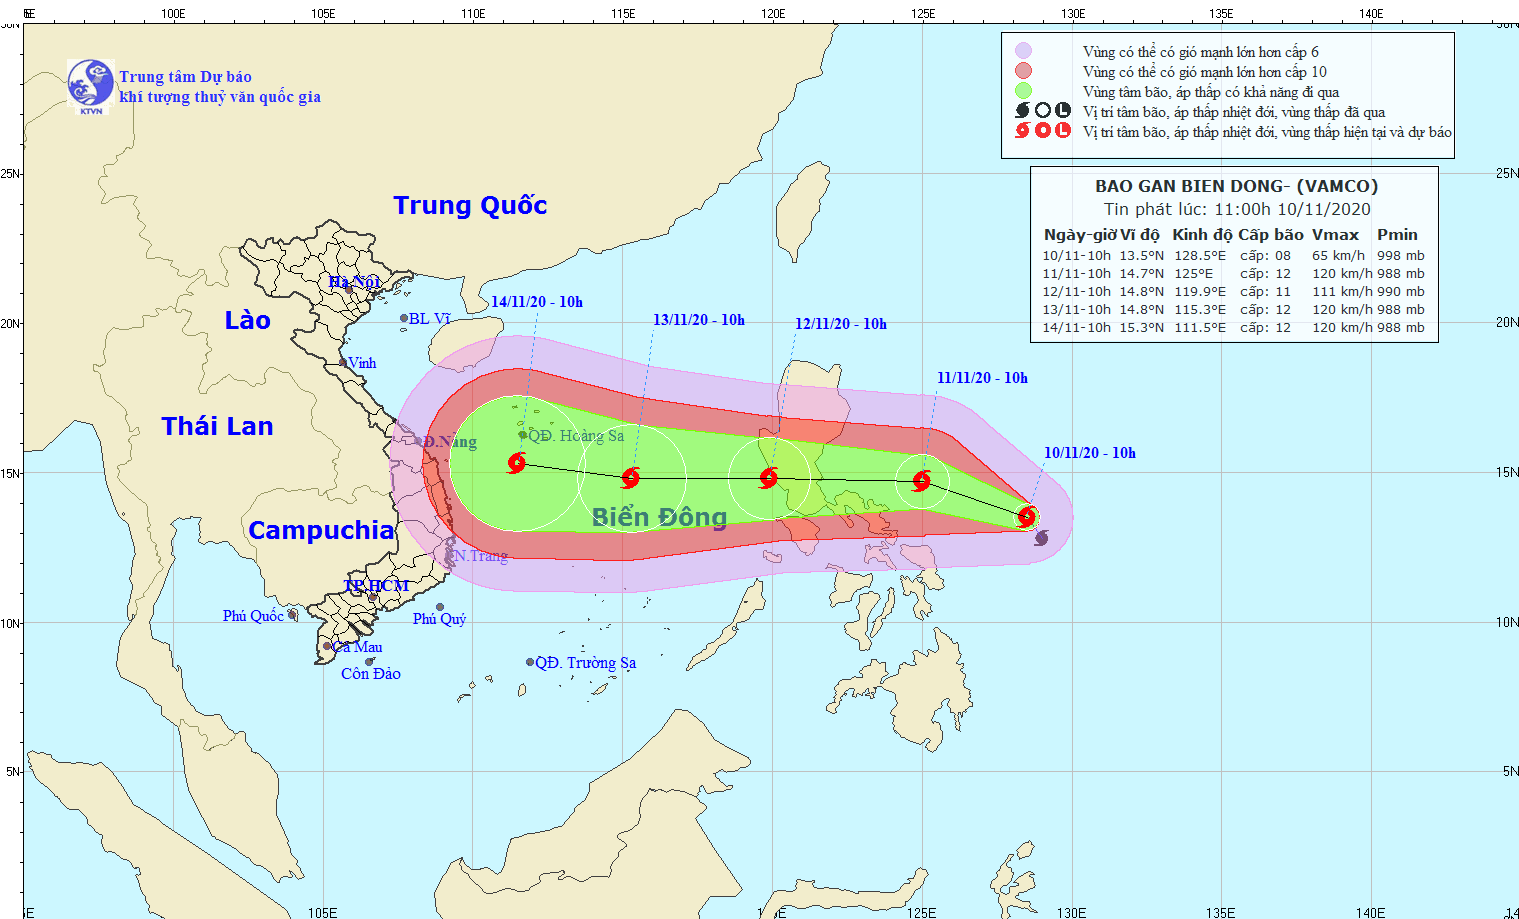 Xuất hiện cơn bão Vamco trên biển Đông